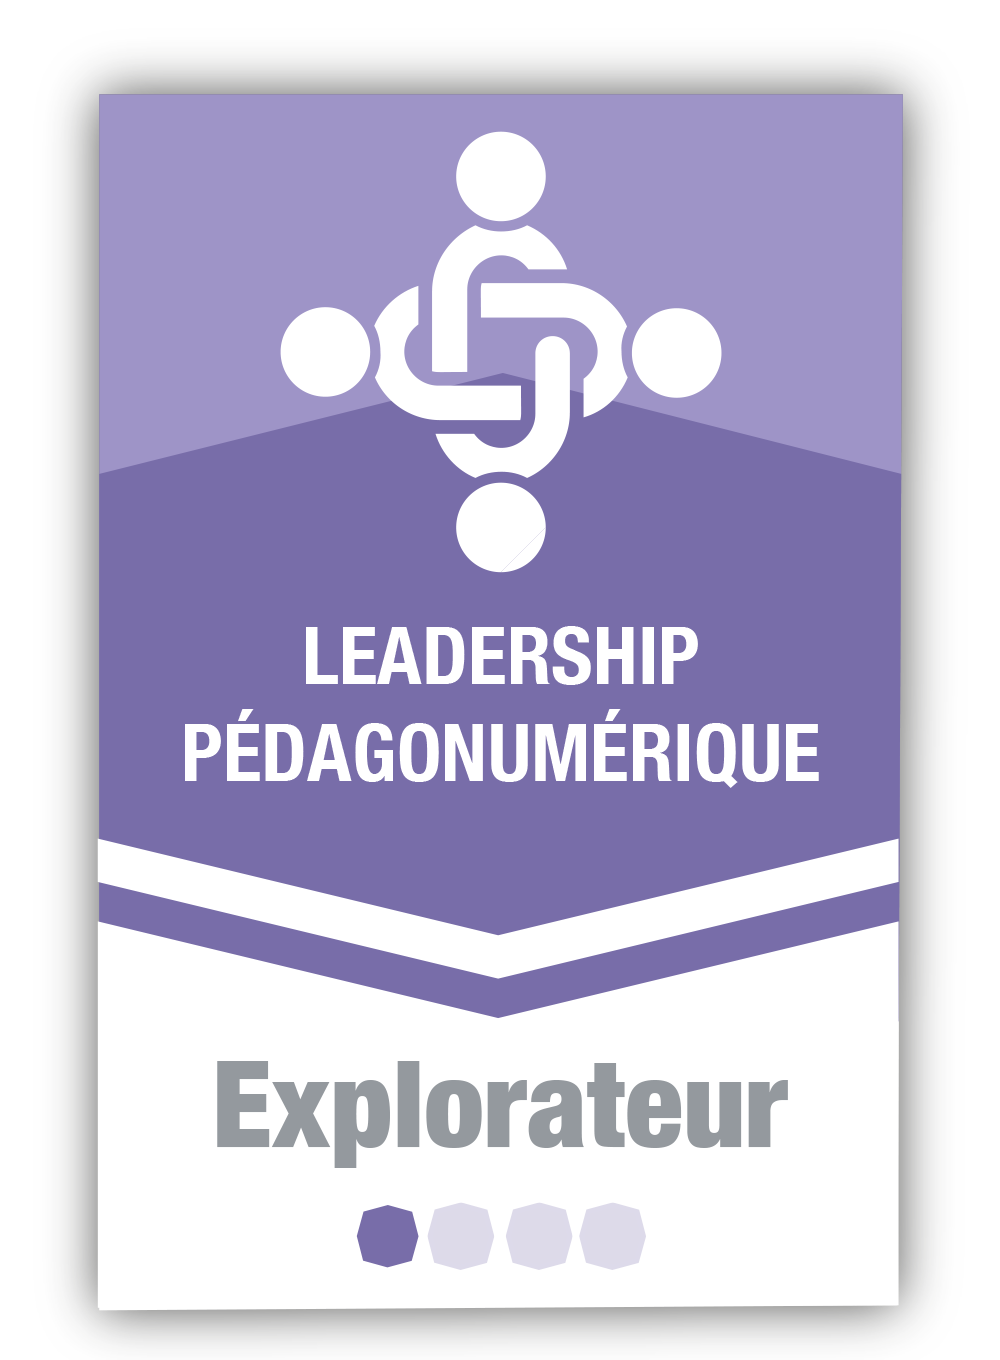 Leadership pédagonumérique 1 - Explorateur